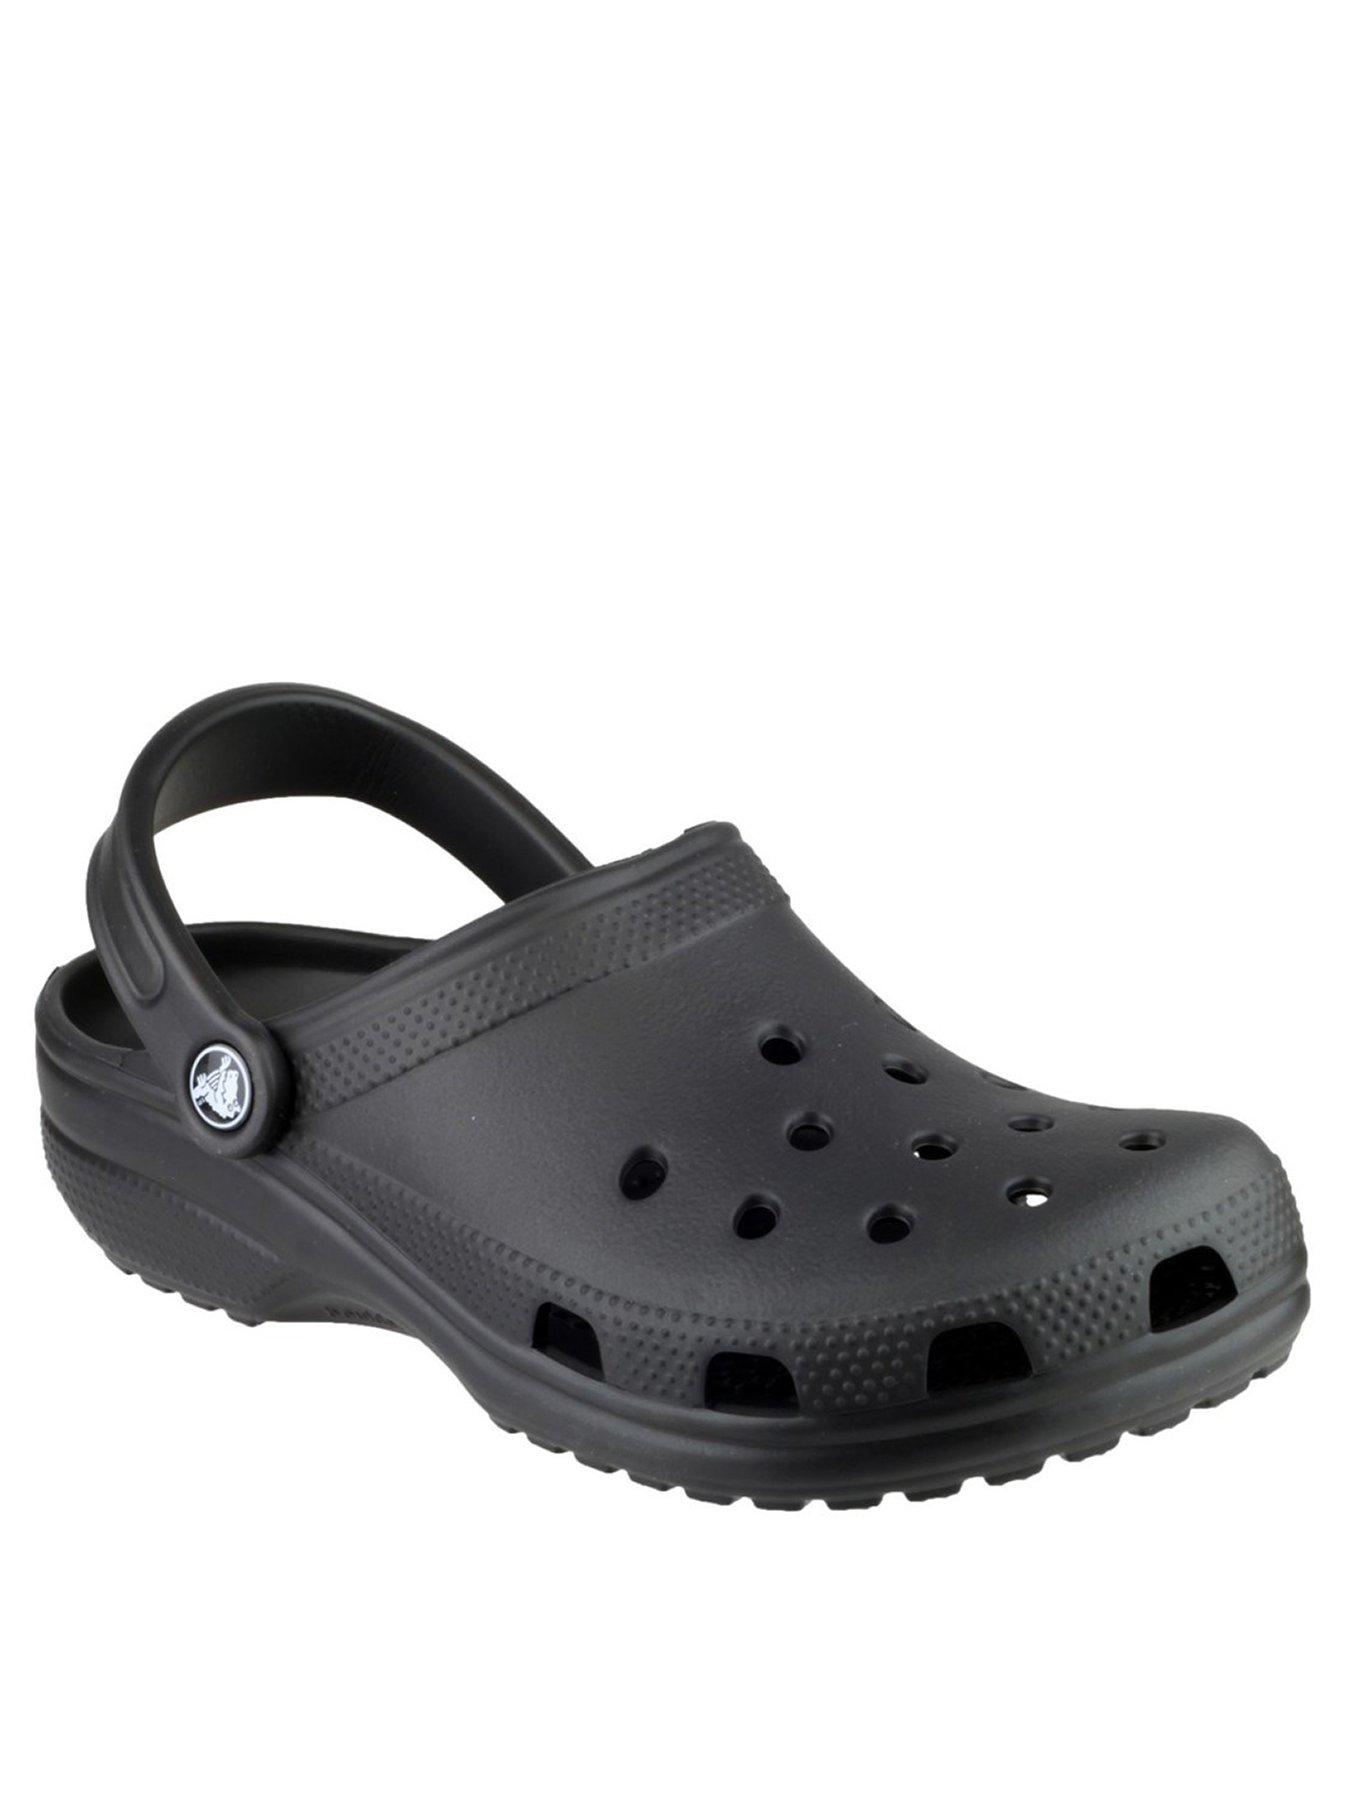 buy crocs online ireland